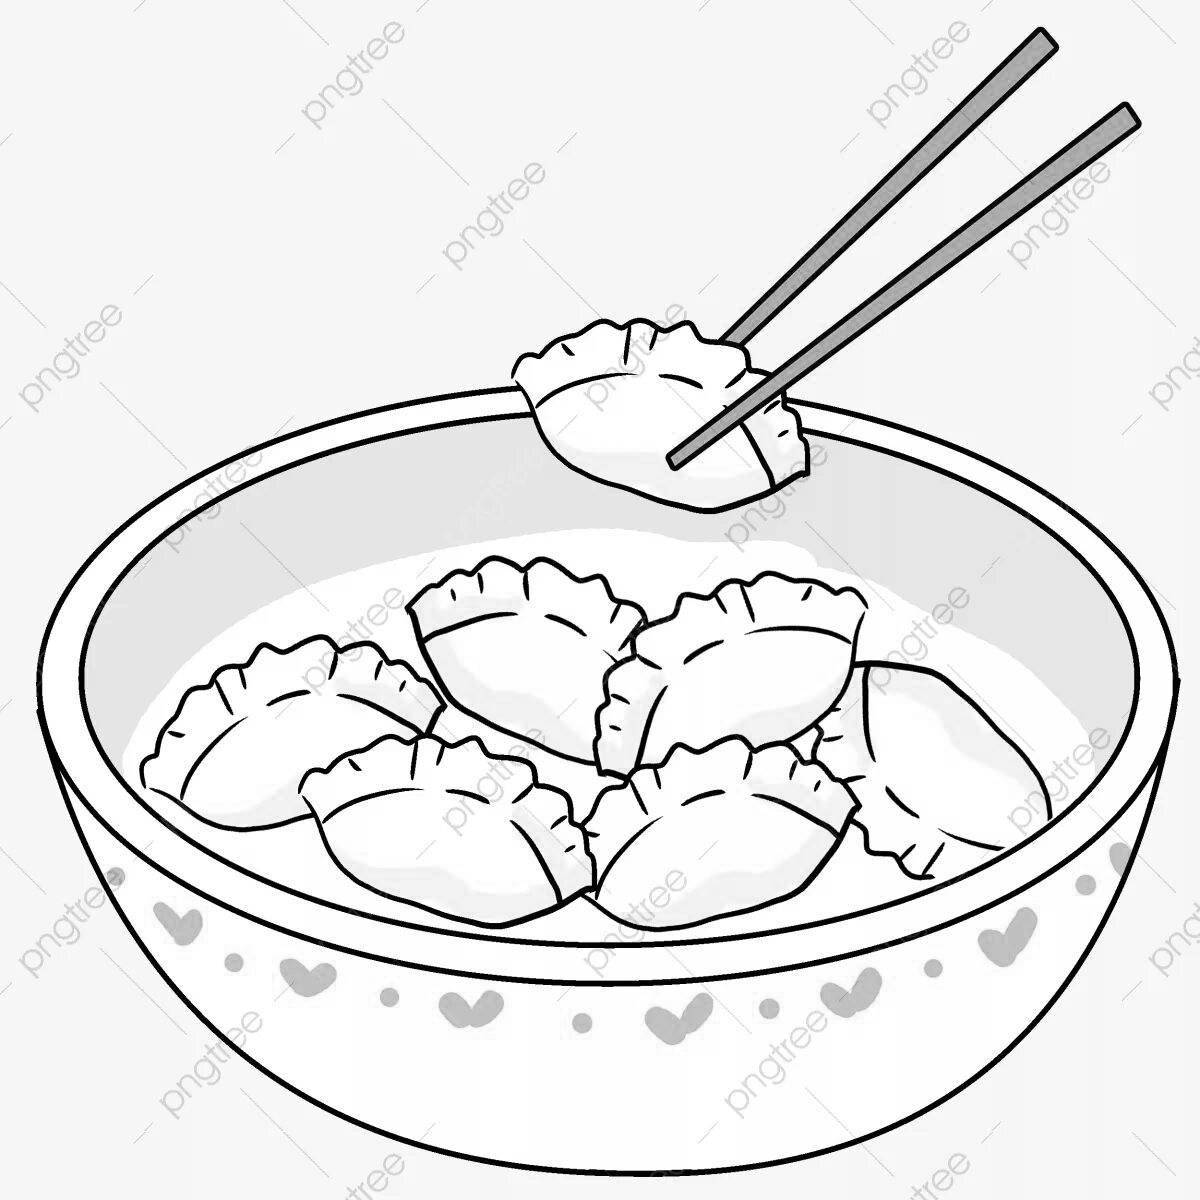 Fragrant dumplings in a bowl